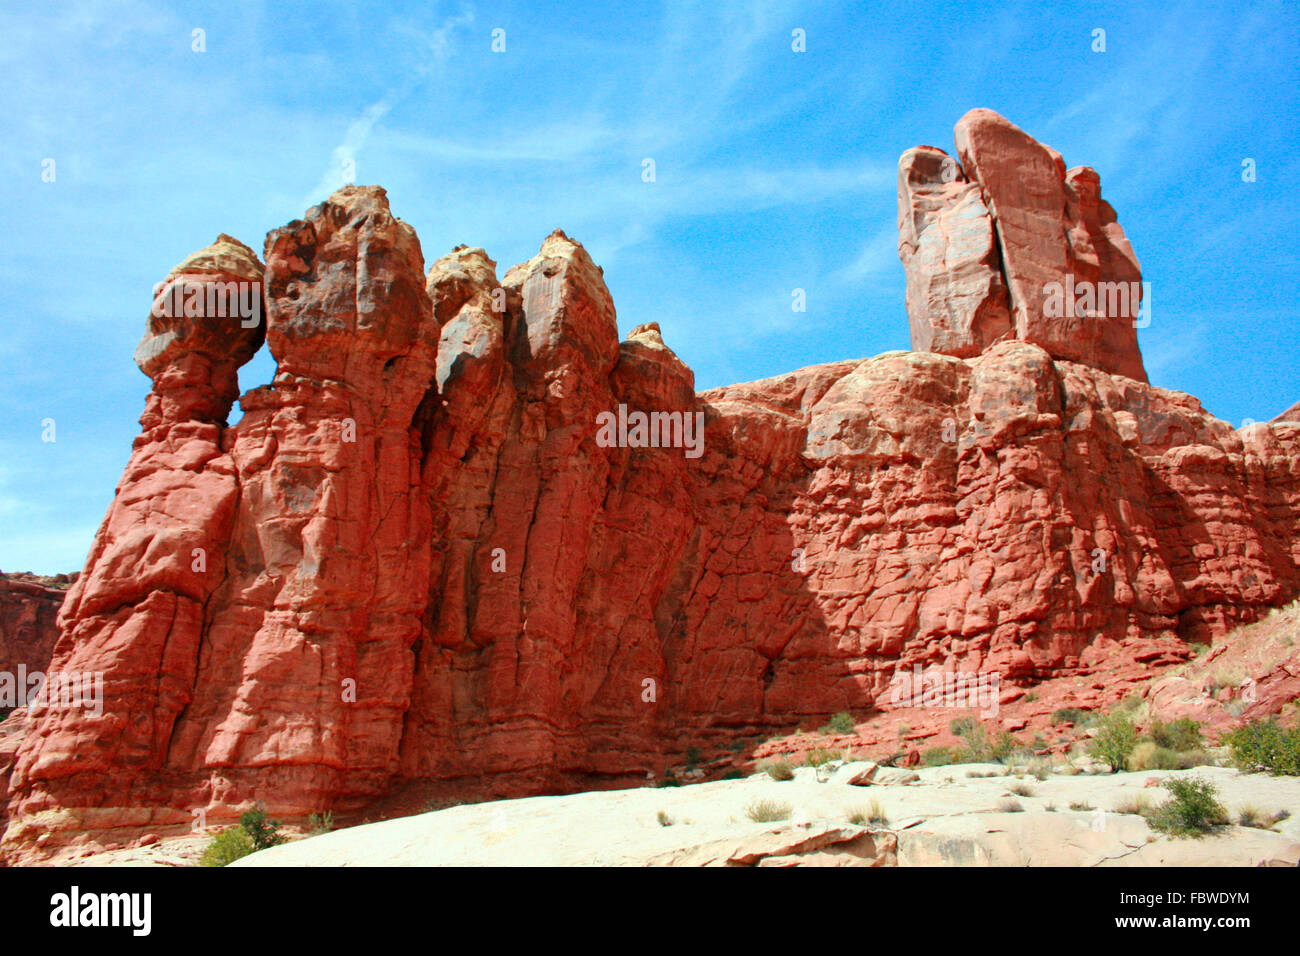 Monoliti di roccia rossa chiamata il giardino di Eden nel Parco Nazionale di Arches nei pressi di Moab Utah, Stati Uniti d'America Foto Stock